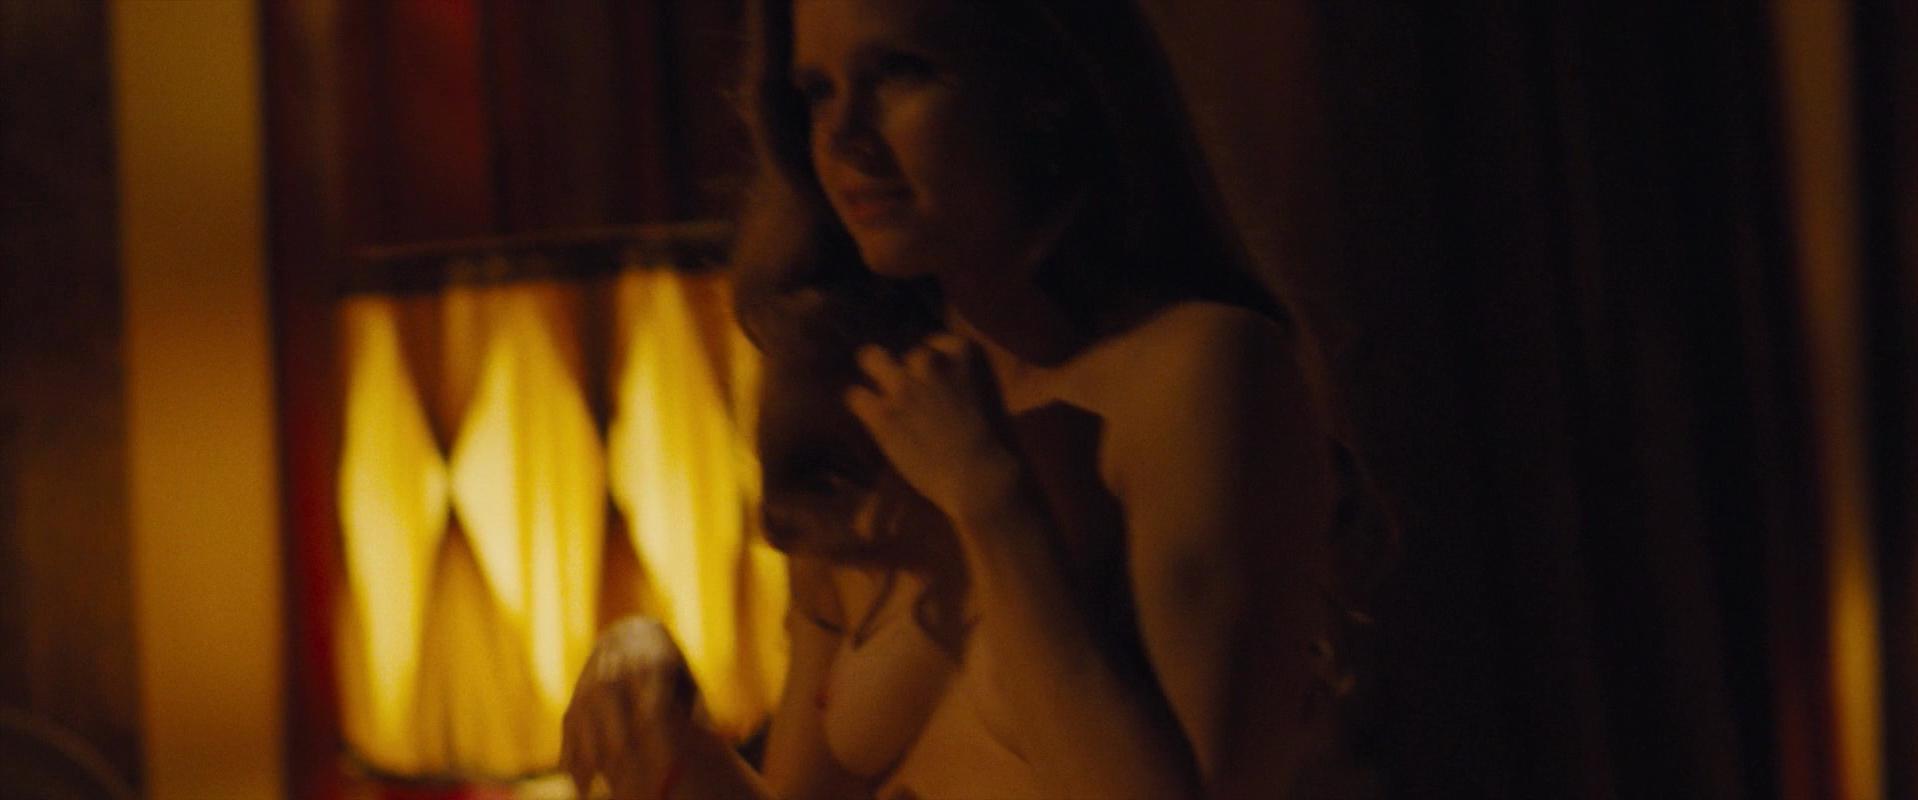 Nude Video Celebs Amy Adams Nude American Hustle 2013